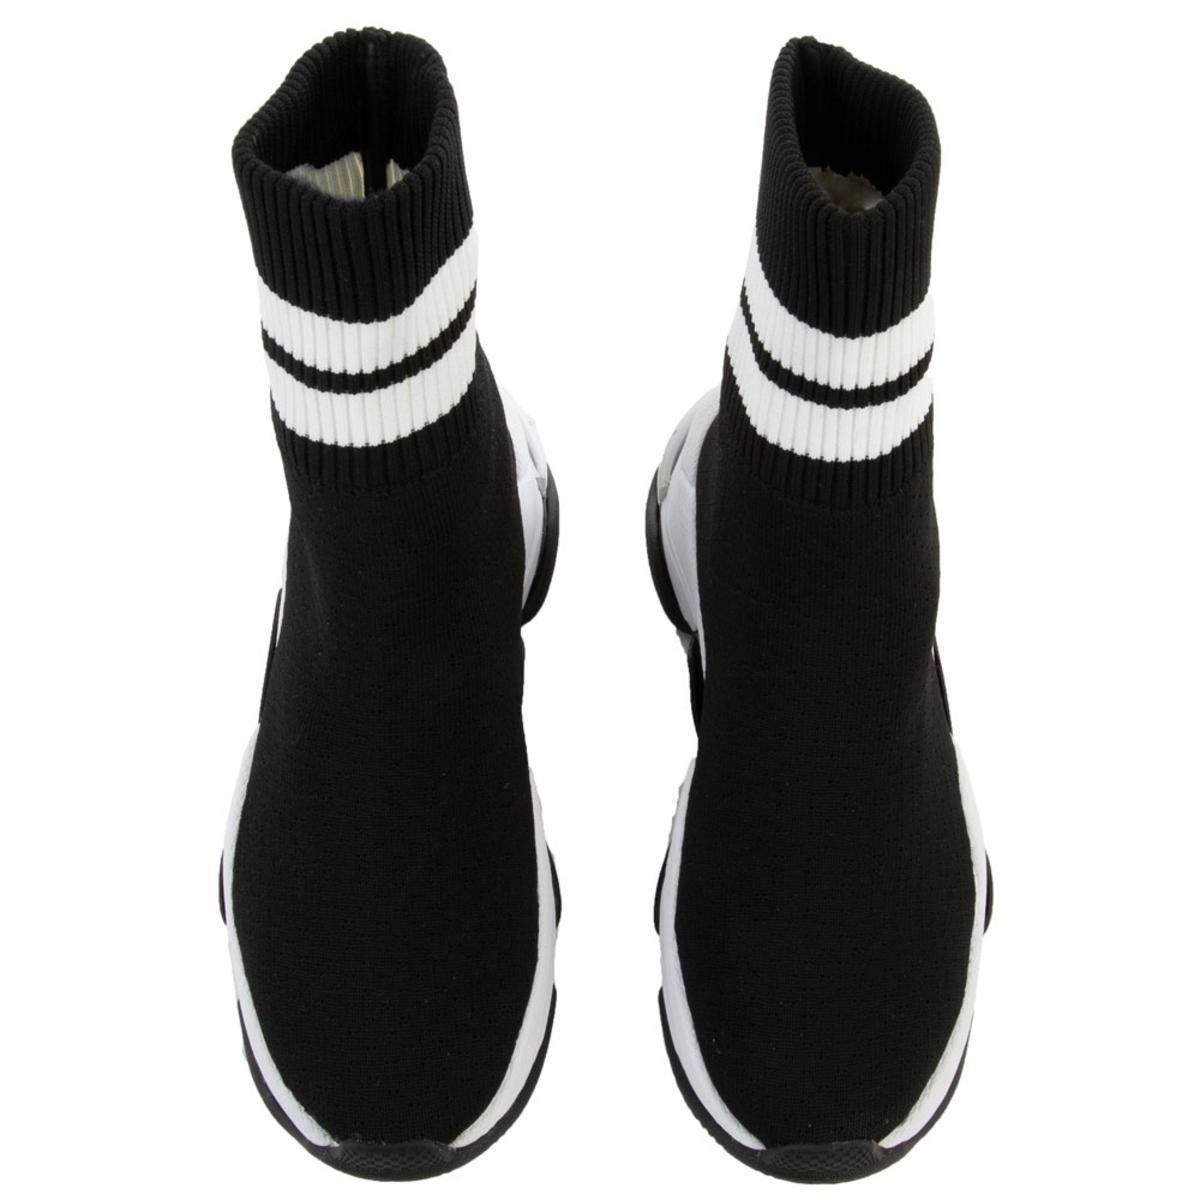 Sneakers in Tekno/Black-White